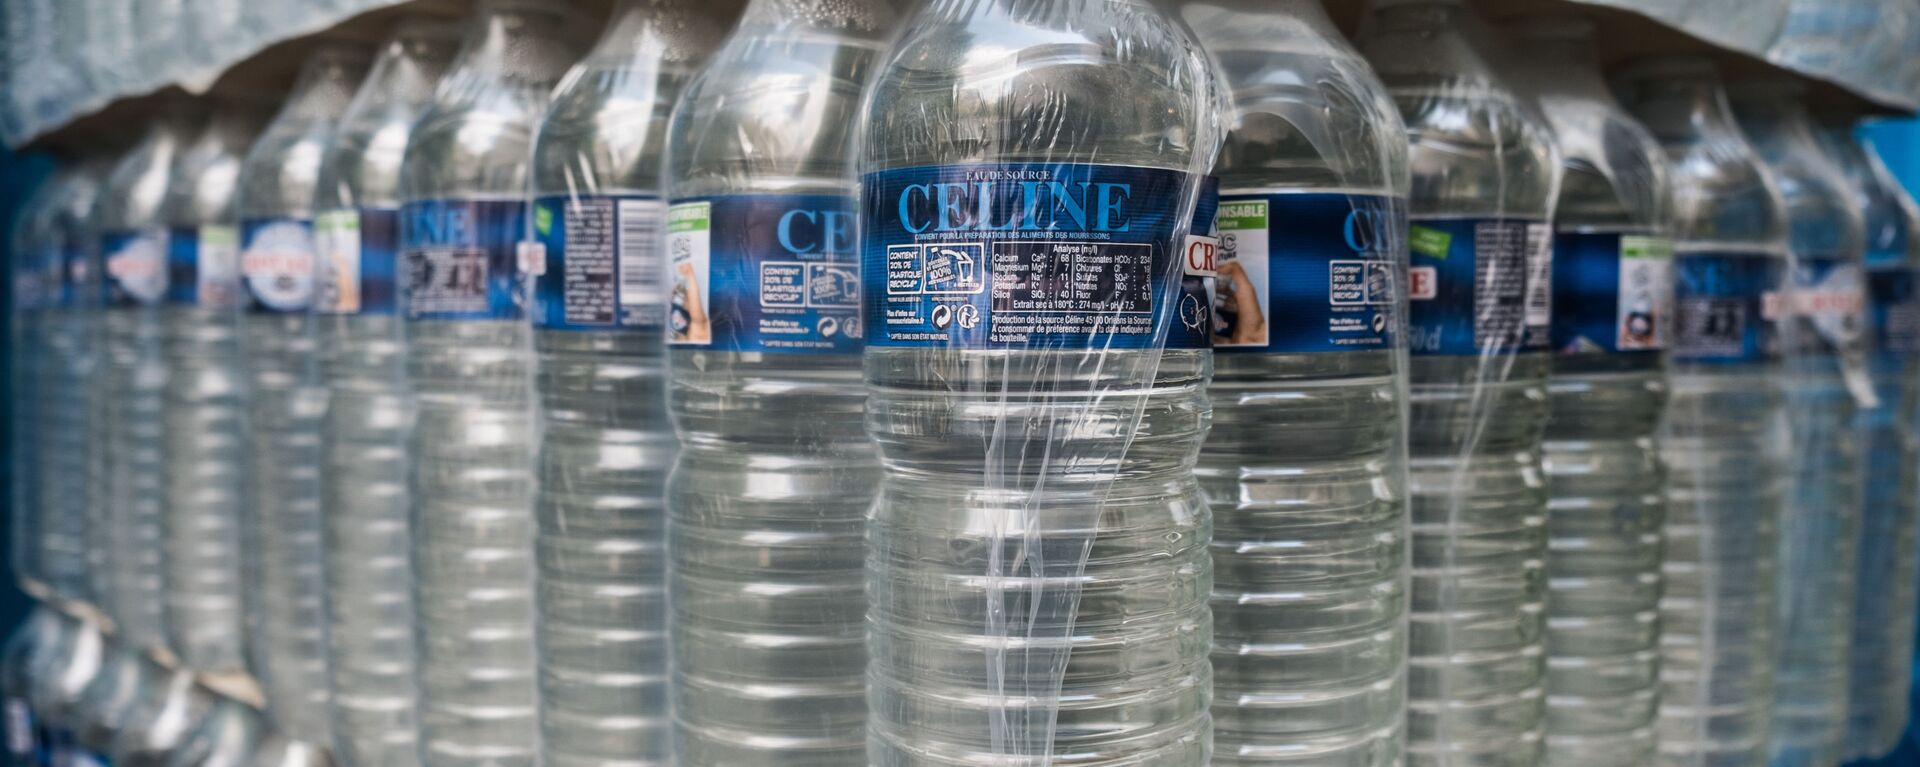 زجاجات مياه بلاستيكية - سبوتنيك عربي, 1920, 27.06.2021